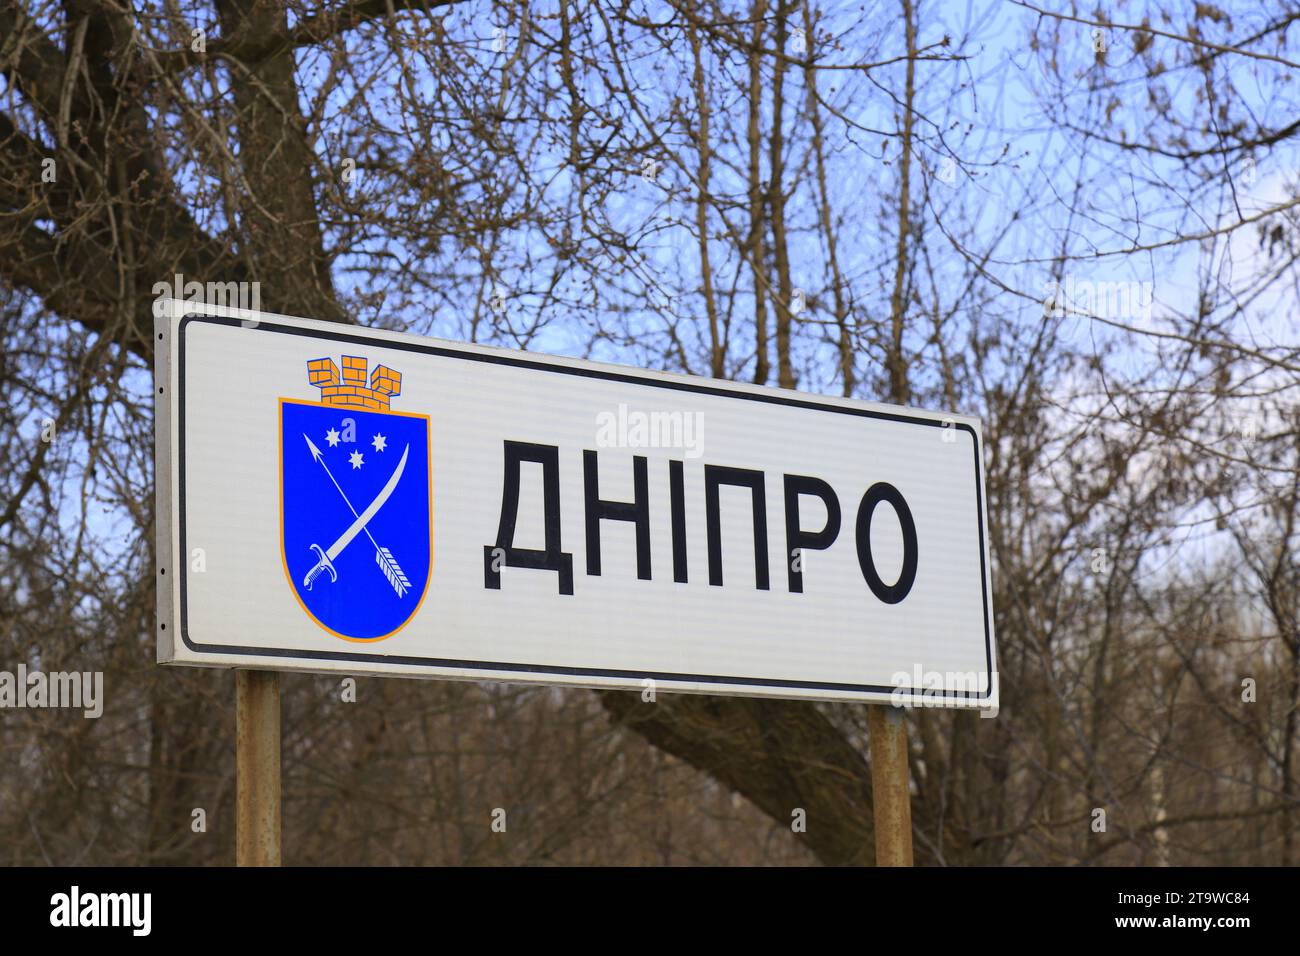 Panneau routier à l'entrée de la ville Dnipro avec mot en ukrainien - Dnipro. Panneau d'information du début de la ville de Dnepr avec armoiries. Ukraine Banque D'Images